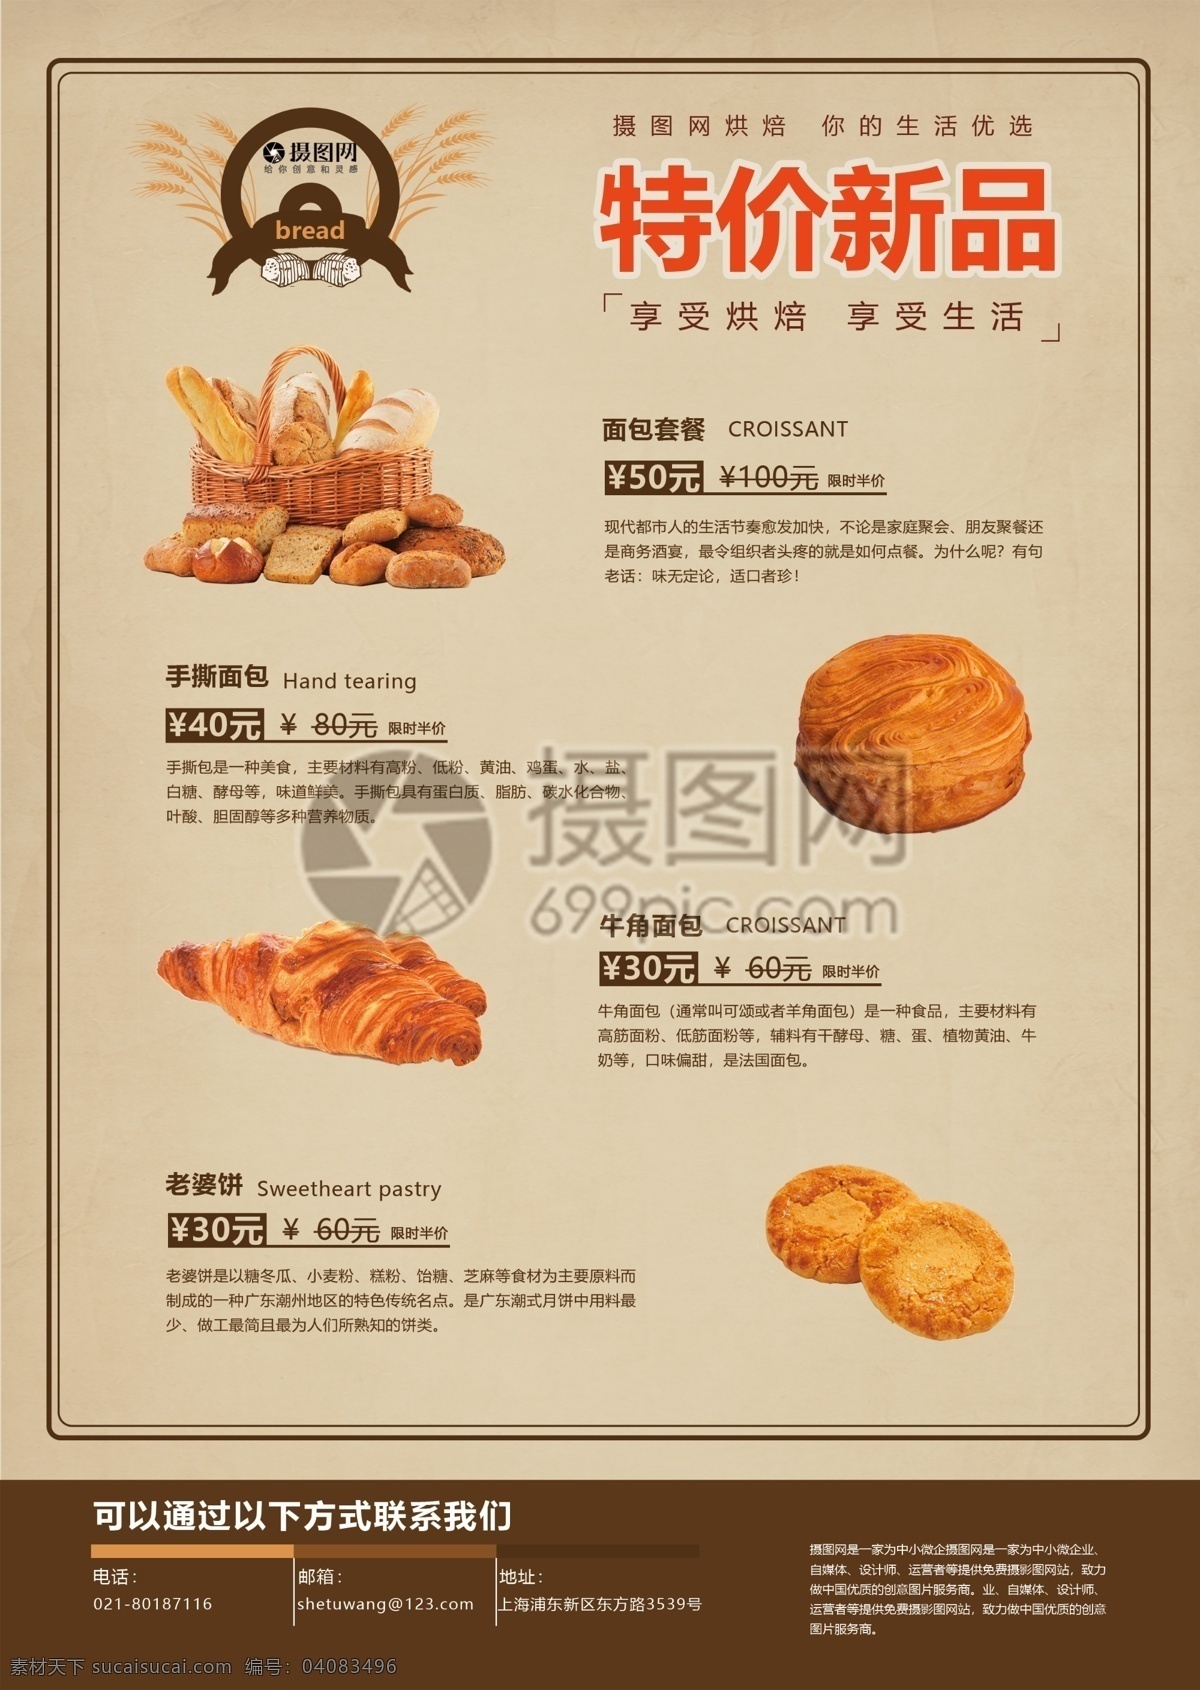 美味 烘 培 坊 面包 宣传单 全麦面包 小麦吗面包 甜点 美食 面包宣传单 面包店传单 传单设计